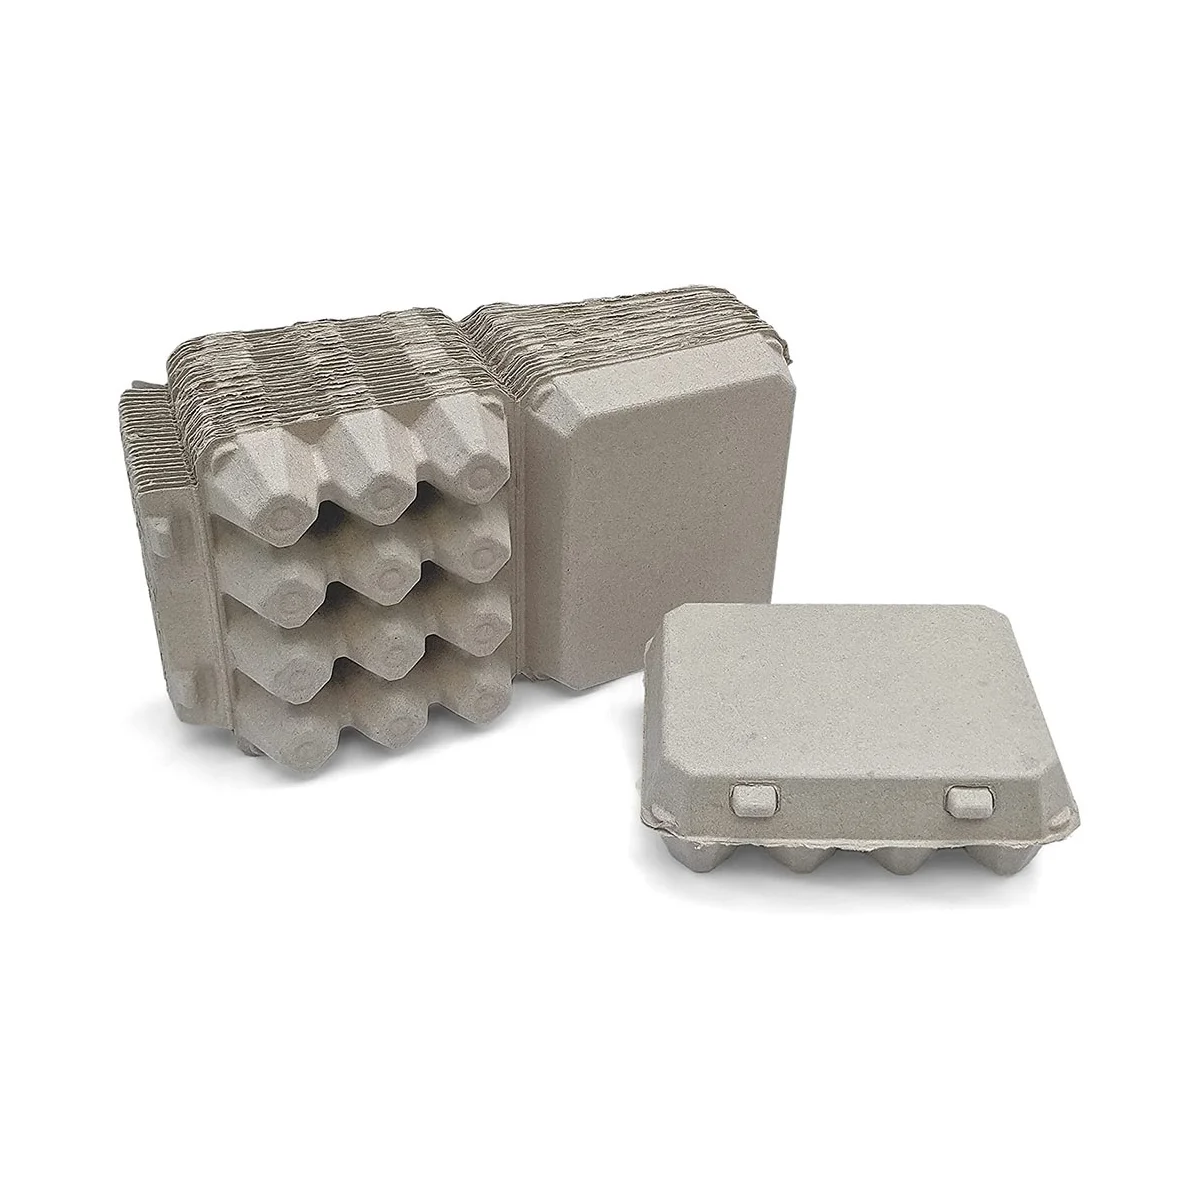 

30 шт. винтажные пустые коробки для яиц-классический стиль 3x4 Вмещает 12 яиц, прочная конструкция, изготовленная из переработанной коробки для яиц A